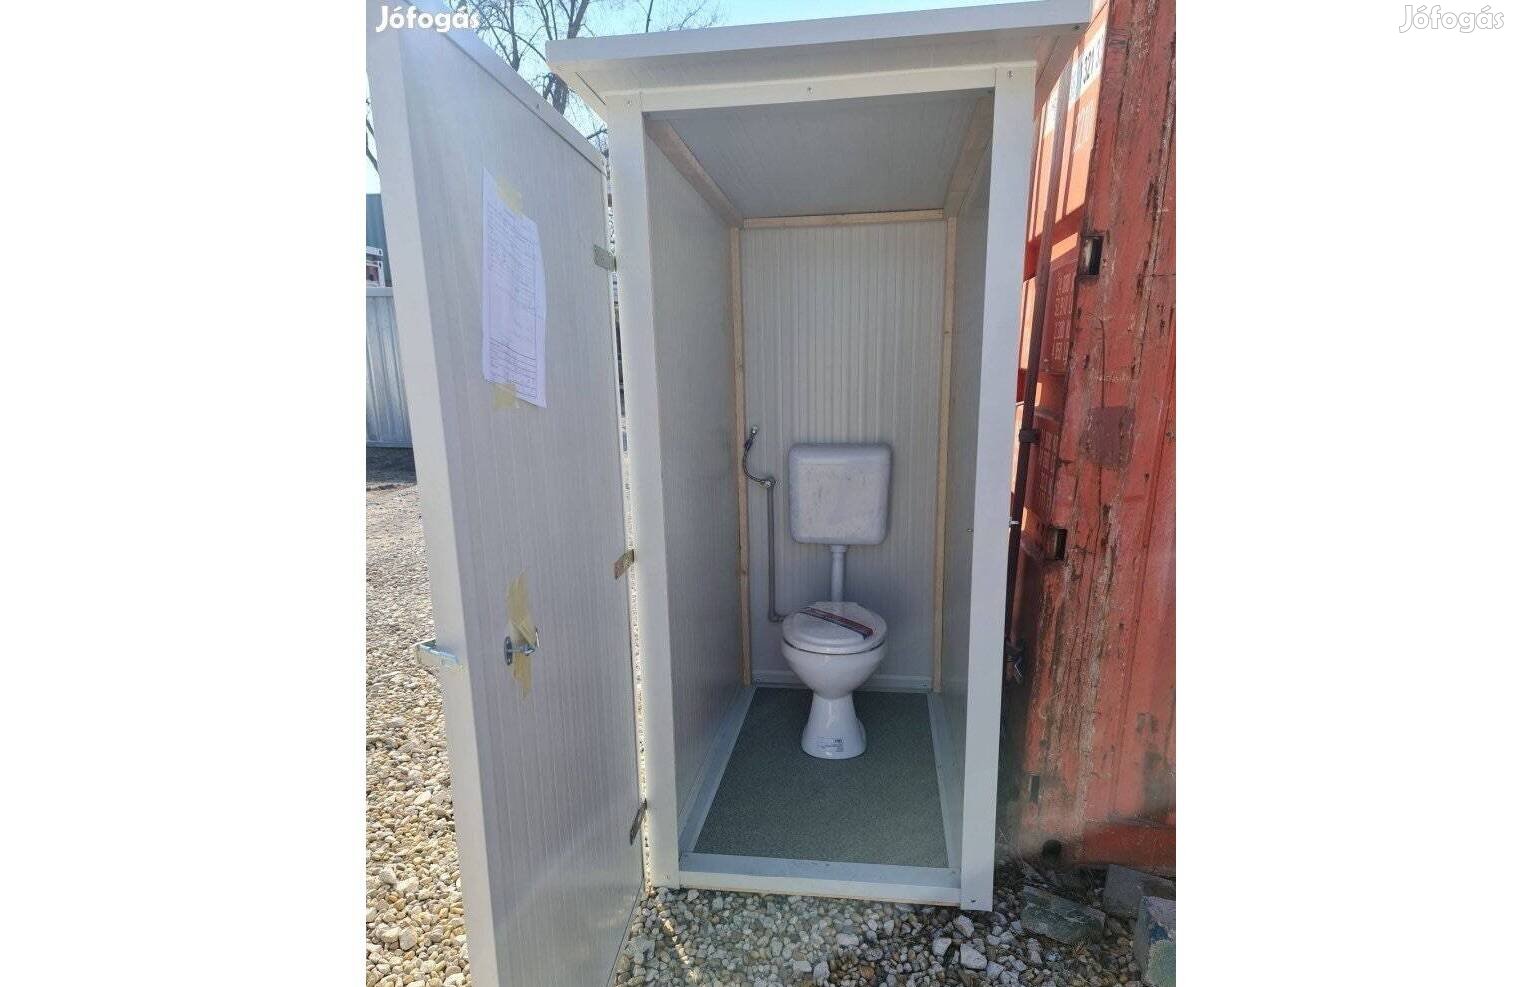 Igényes vízöblítéses kerti WC., szaniter konténer, kinti WC!